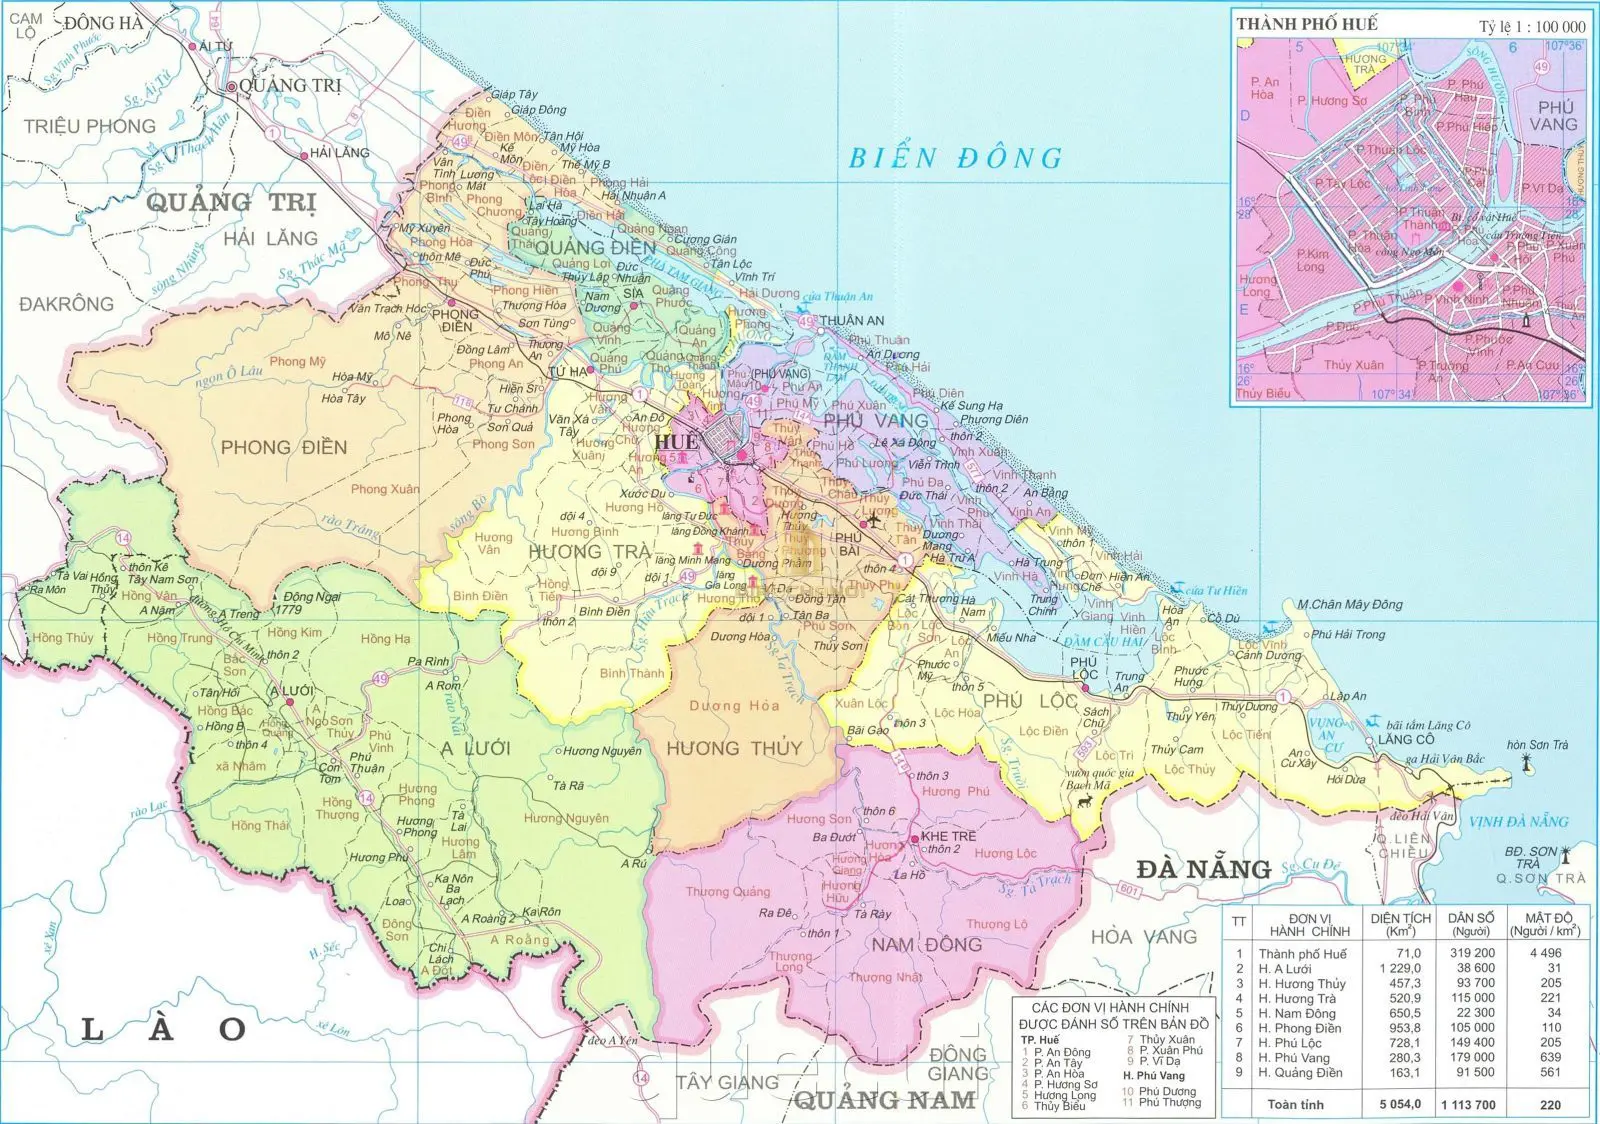 File bản đồ chi tiết, sắc nét của tỉnh Thừa Thiên Huế